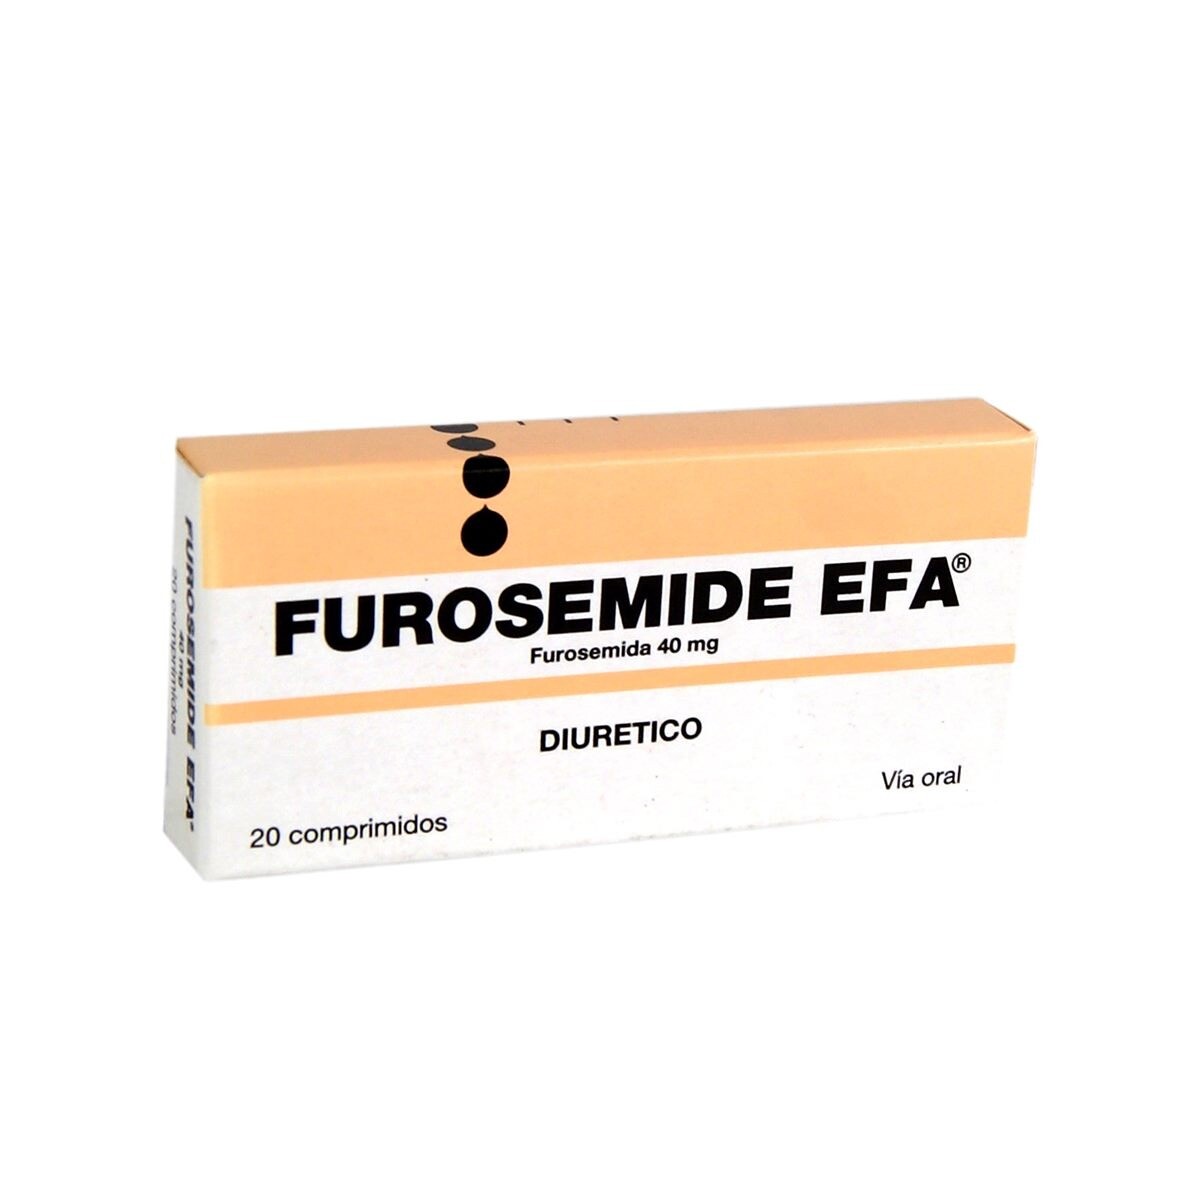 Furosemide 20 Comp. Efa 